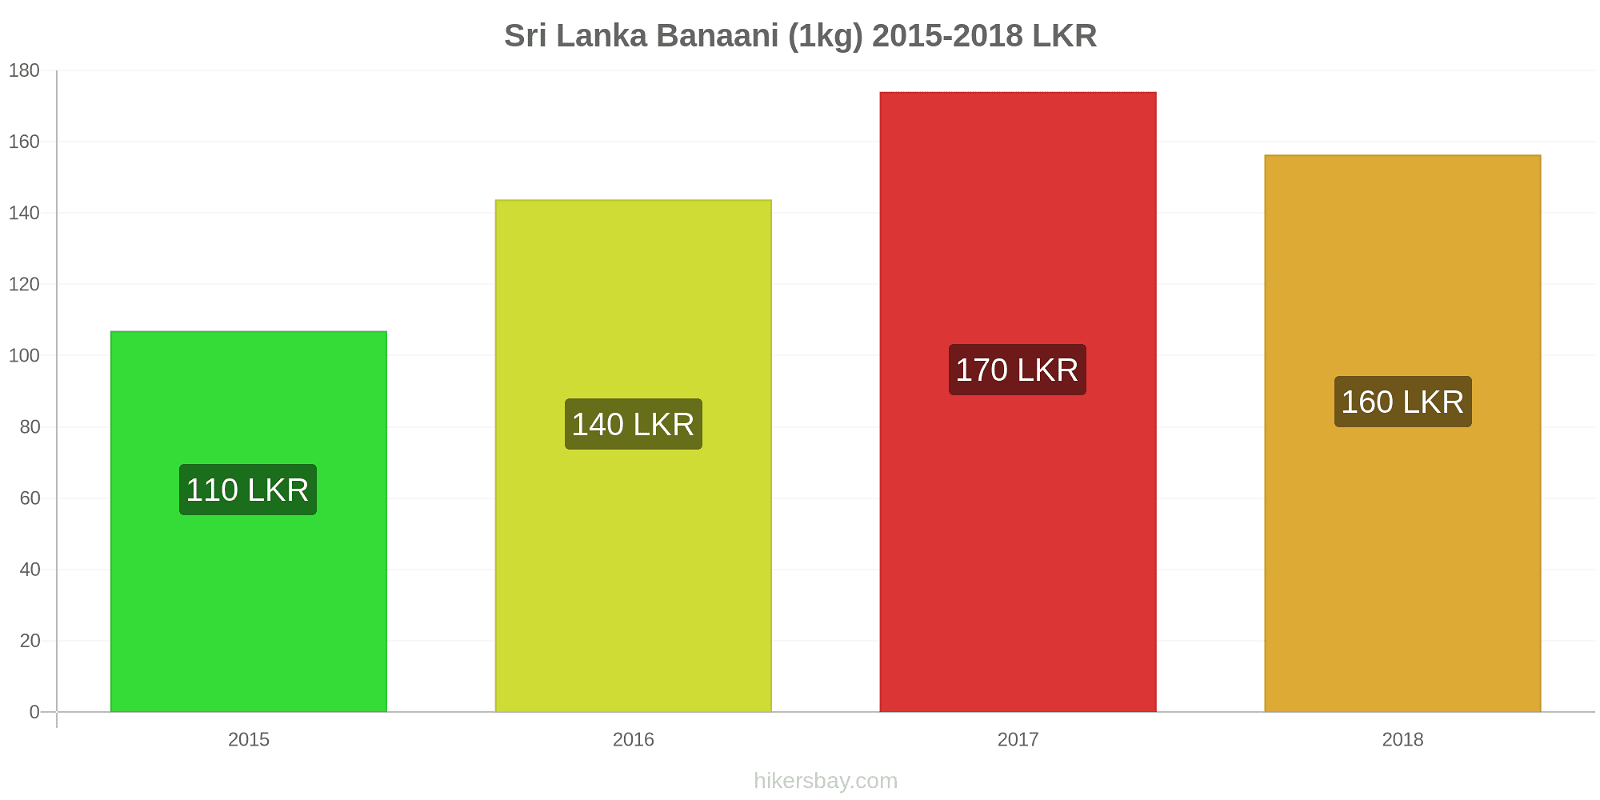 Sri Lanka hintojen muutokset Banaani (1kg) hikersbay.com